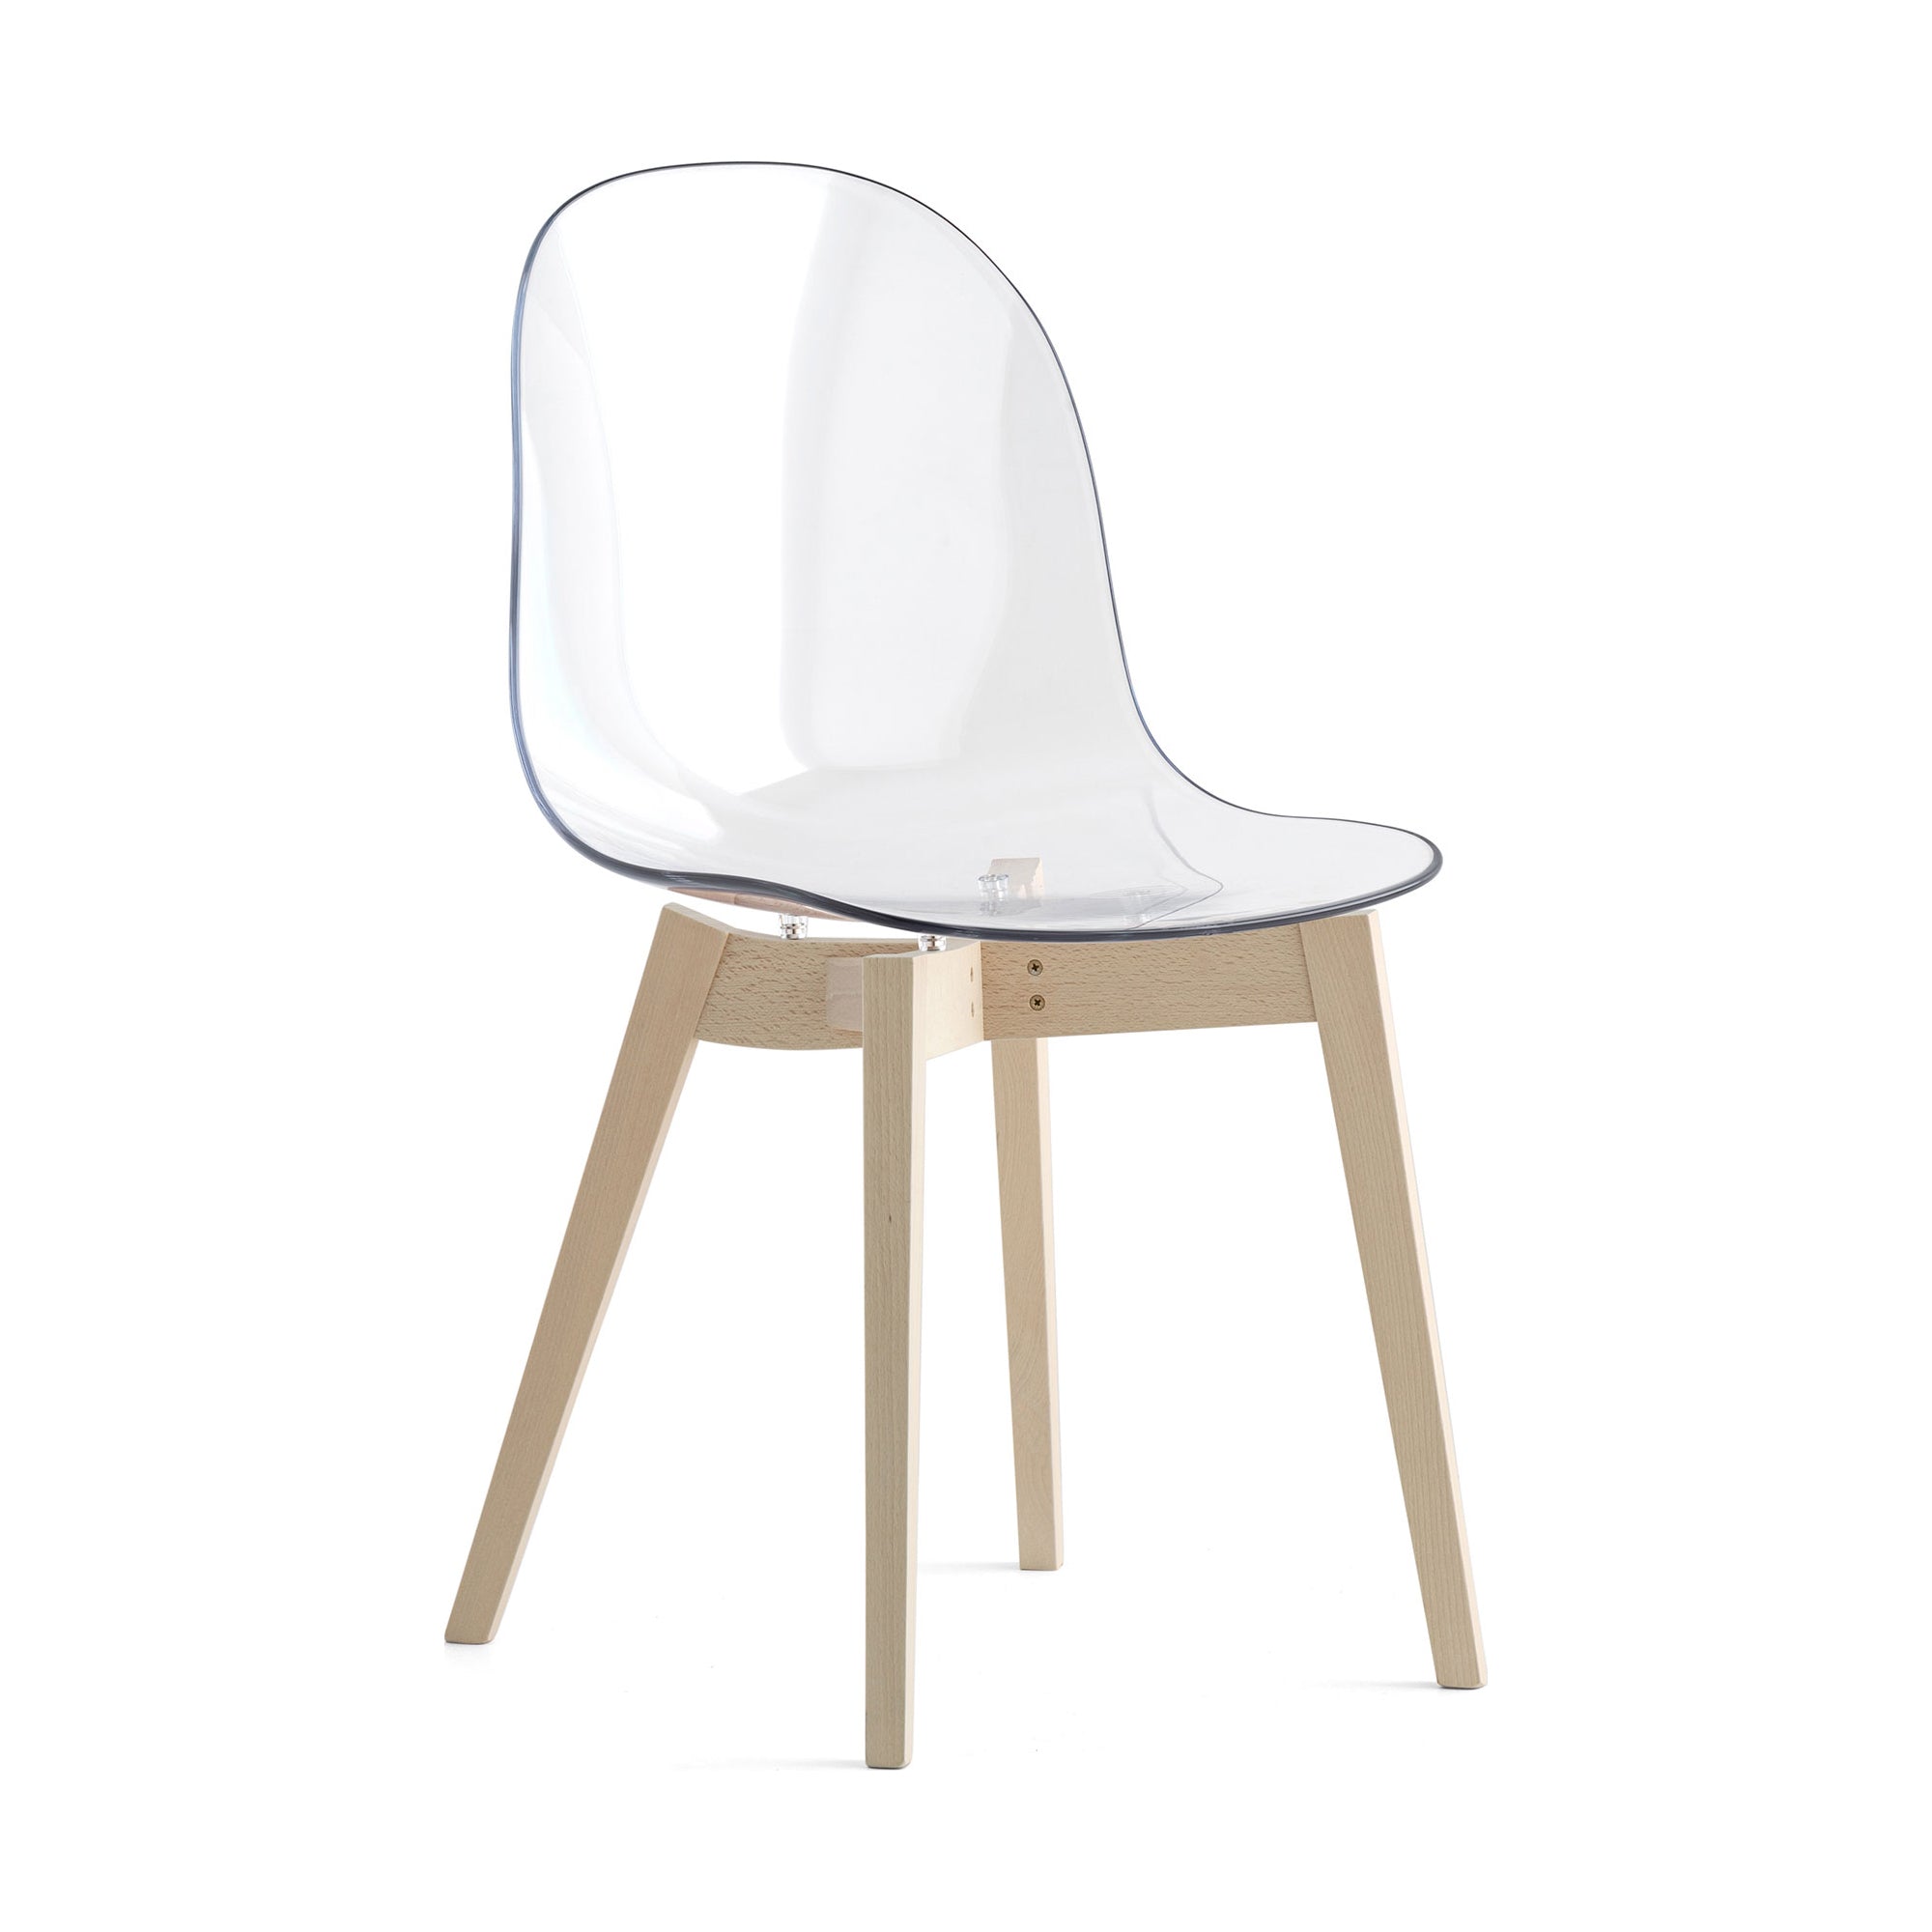 4 Connubia Wood Academy - 2Modern Chair Leg Base - Solid